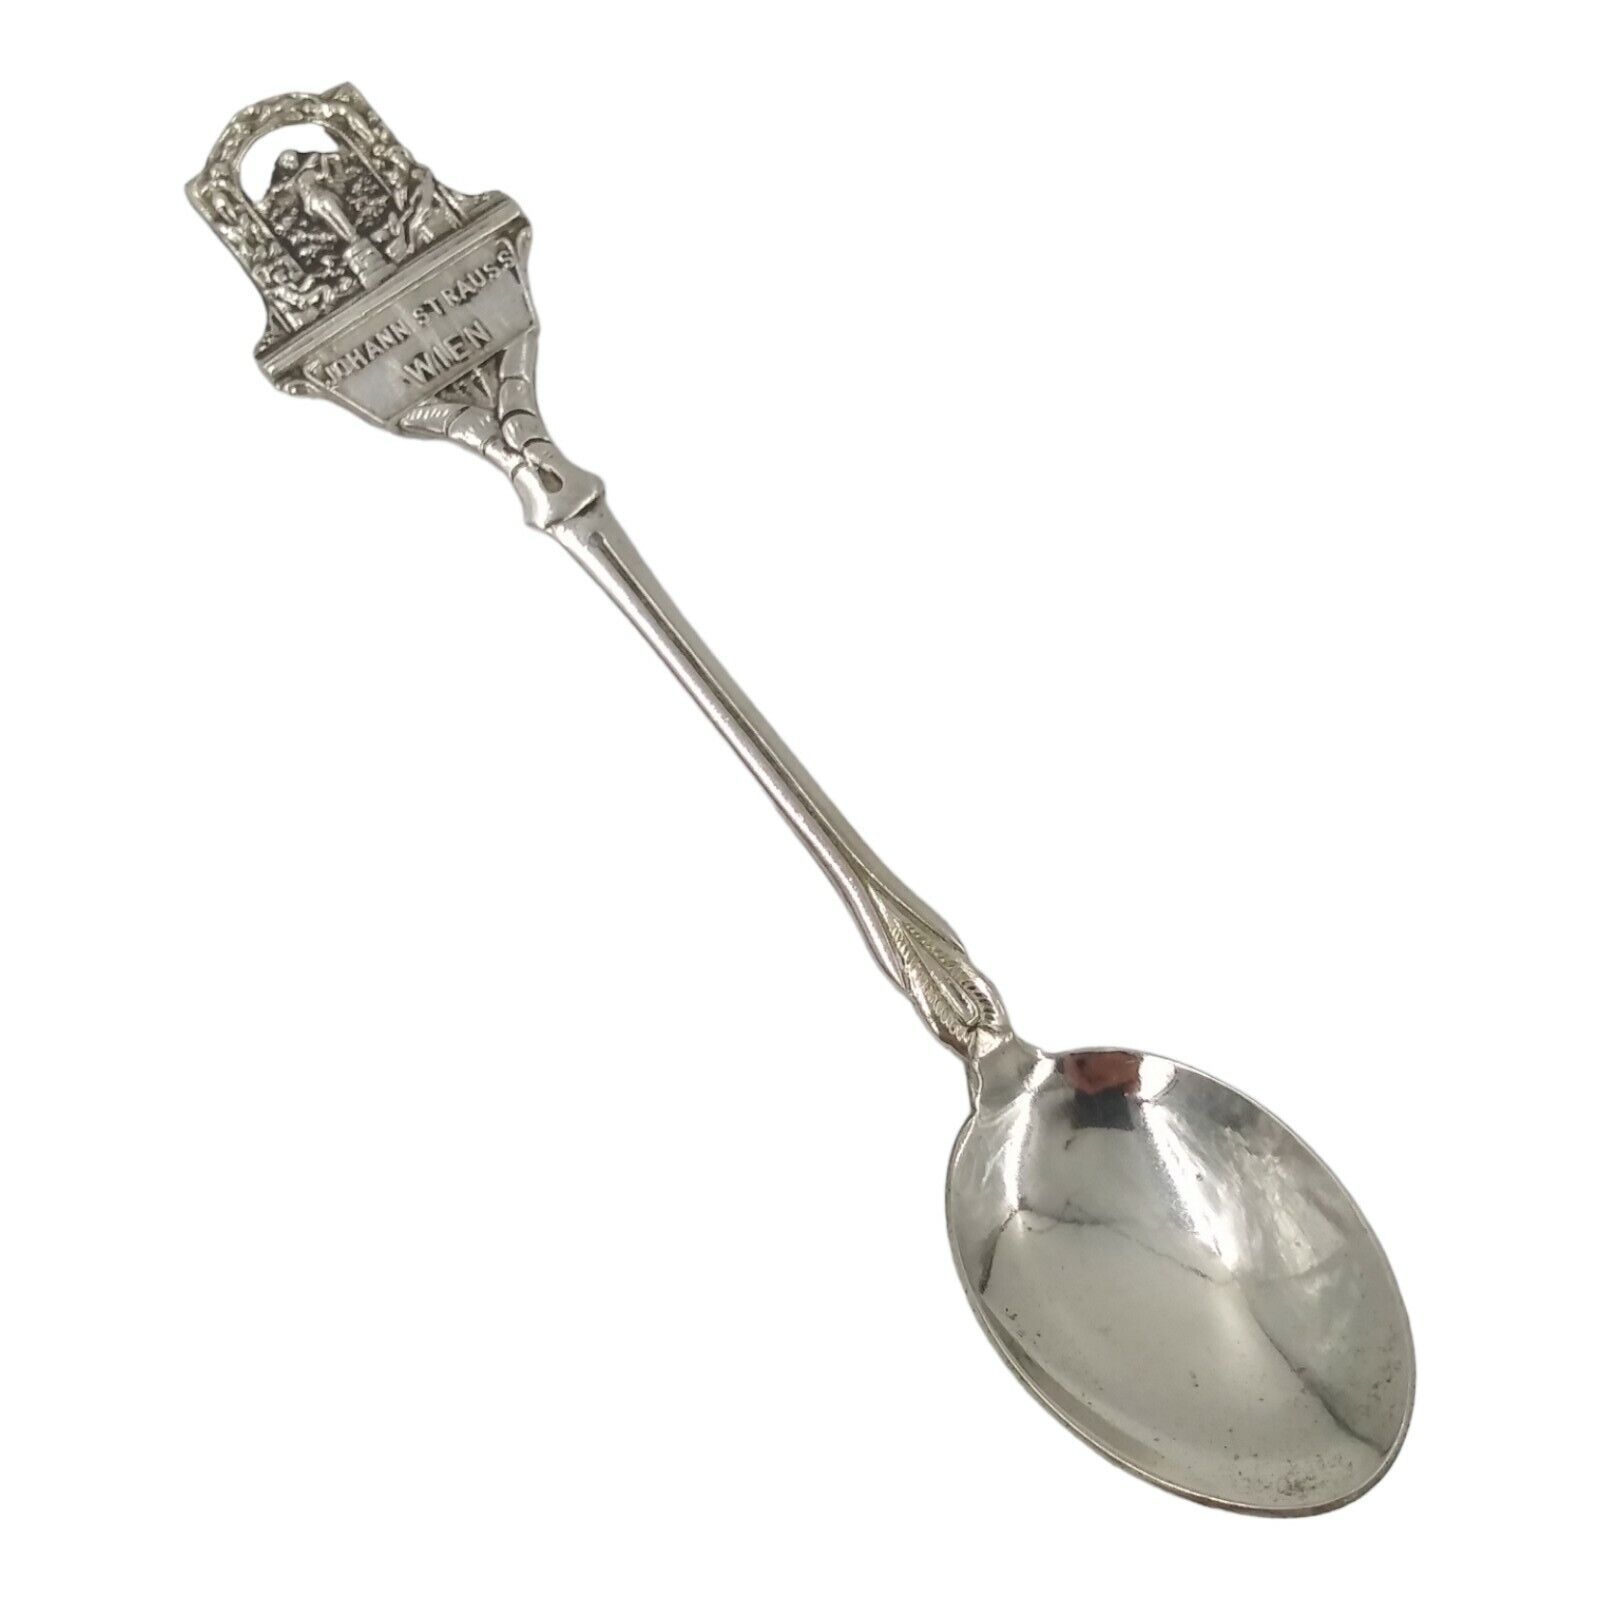 Vintage Johann Strauss Wien Vienna Austria Souvenir Spoon Collectible